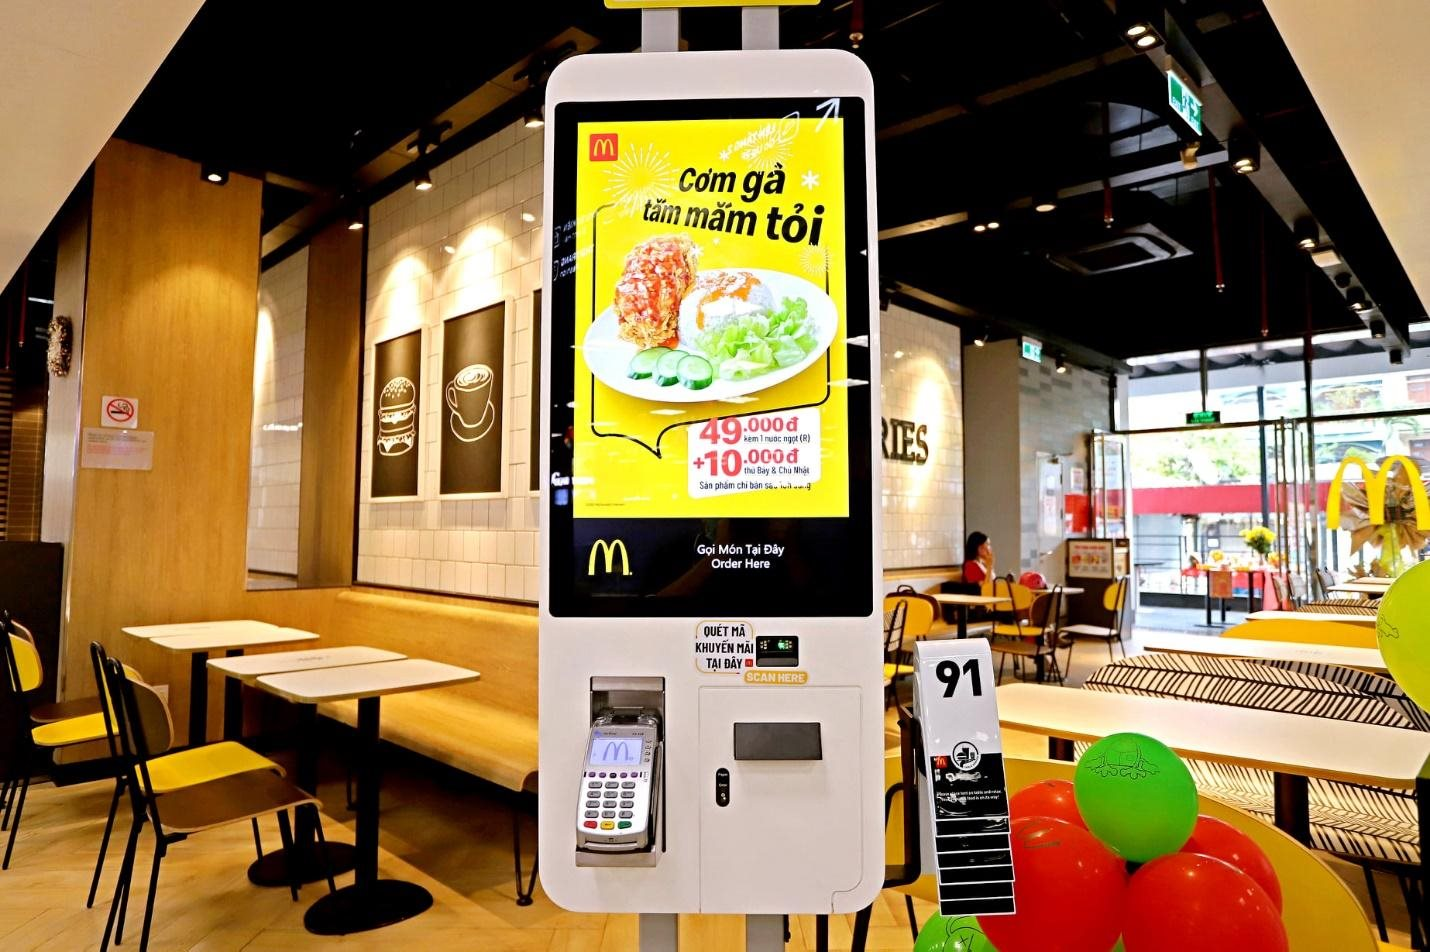 McDONALDS KHAI TRƯƠNG CỬA HÀNG ĐẦU TIÊN TẠI NHA TRANG  McDonalds Vietnam